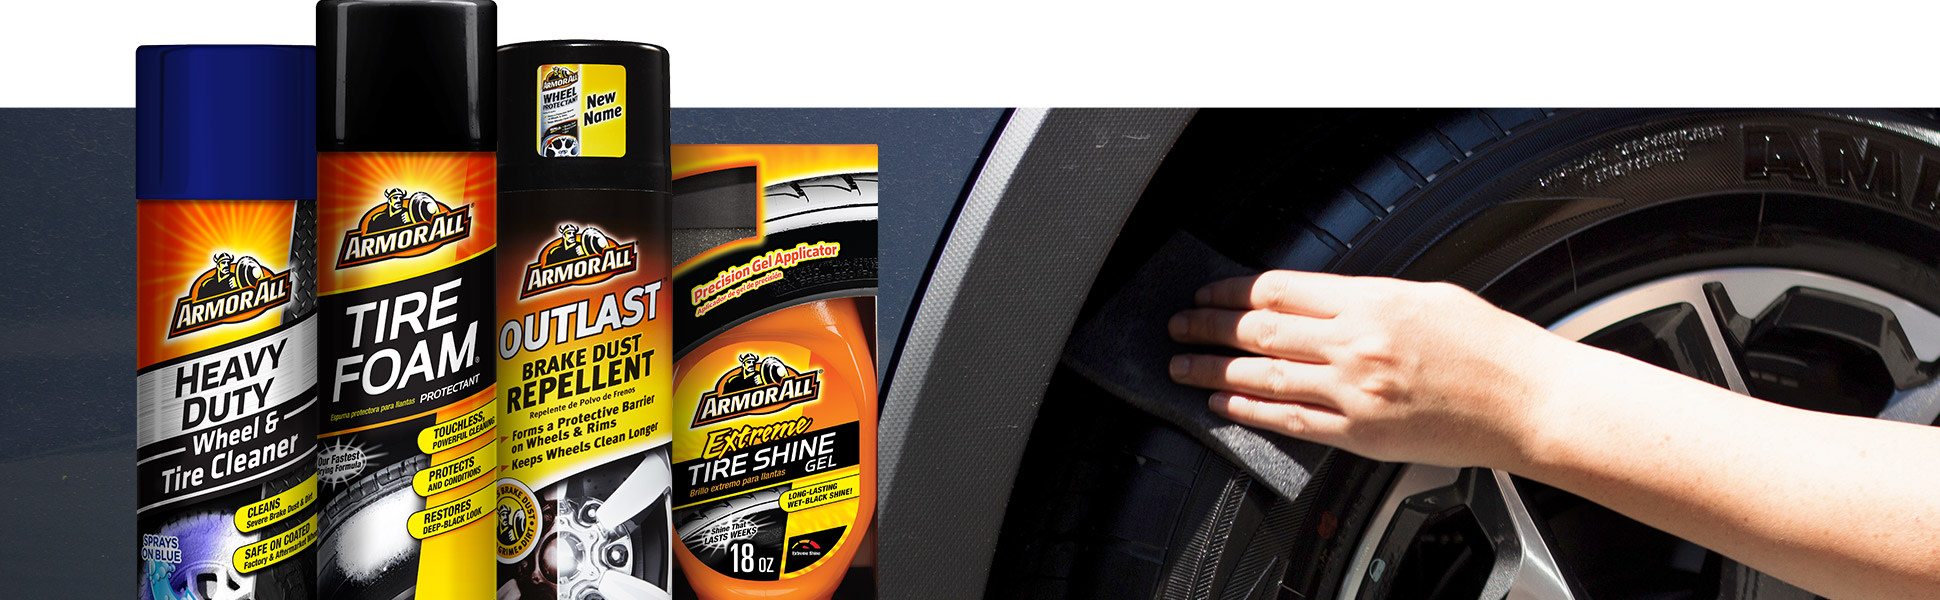 The Diablo Wheel Cleaning & Tire Foaming Shine Kit